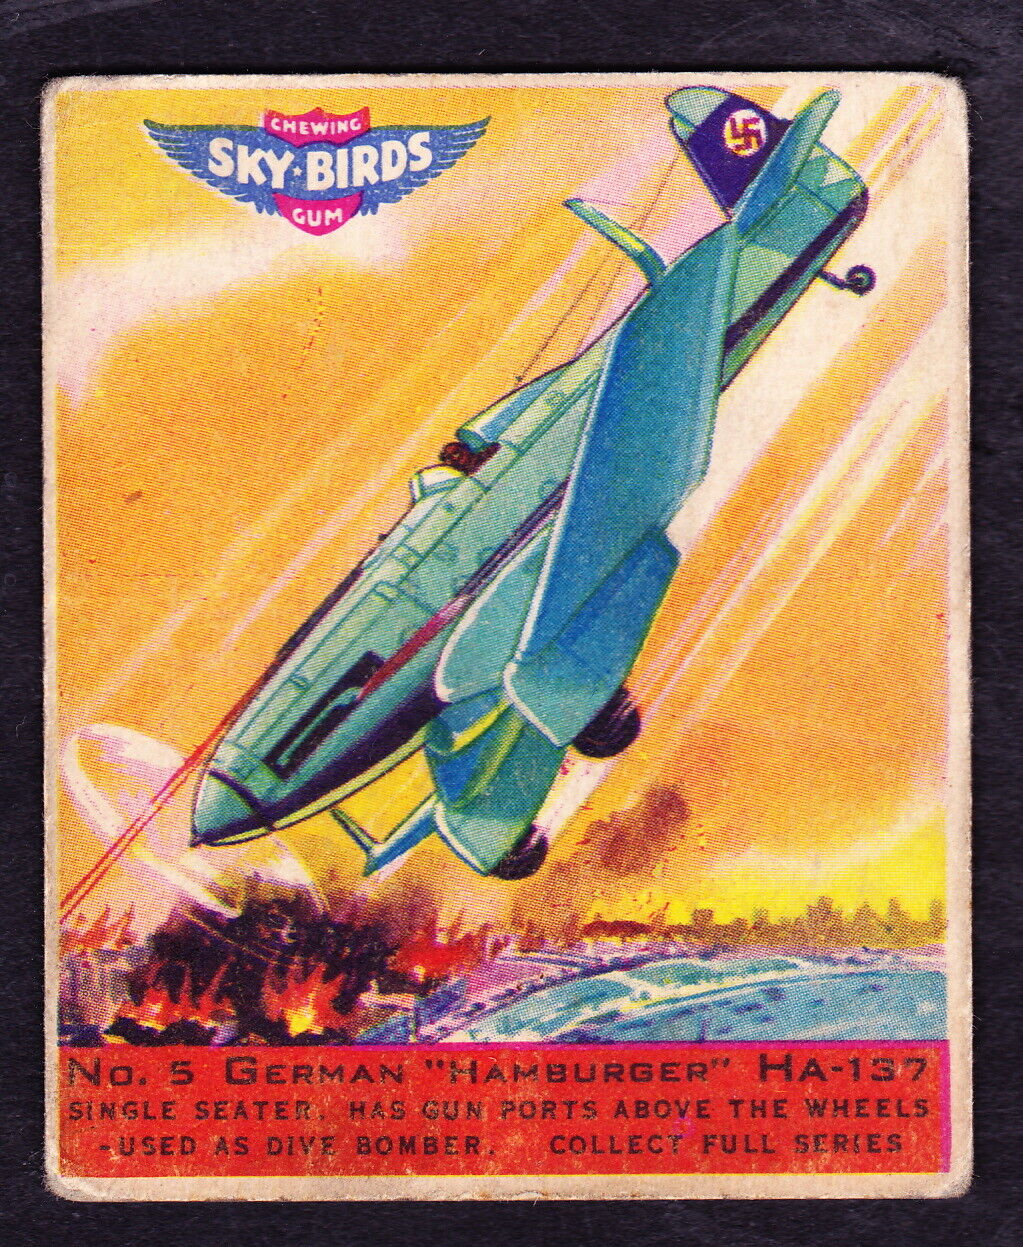 1941 GOUDEY SKY BIRDS #5 GERMAN HAMBURGER HA-137